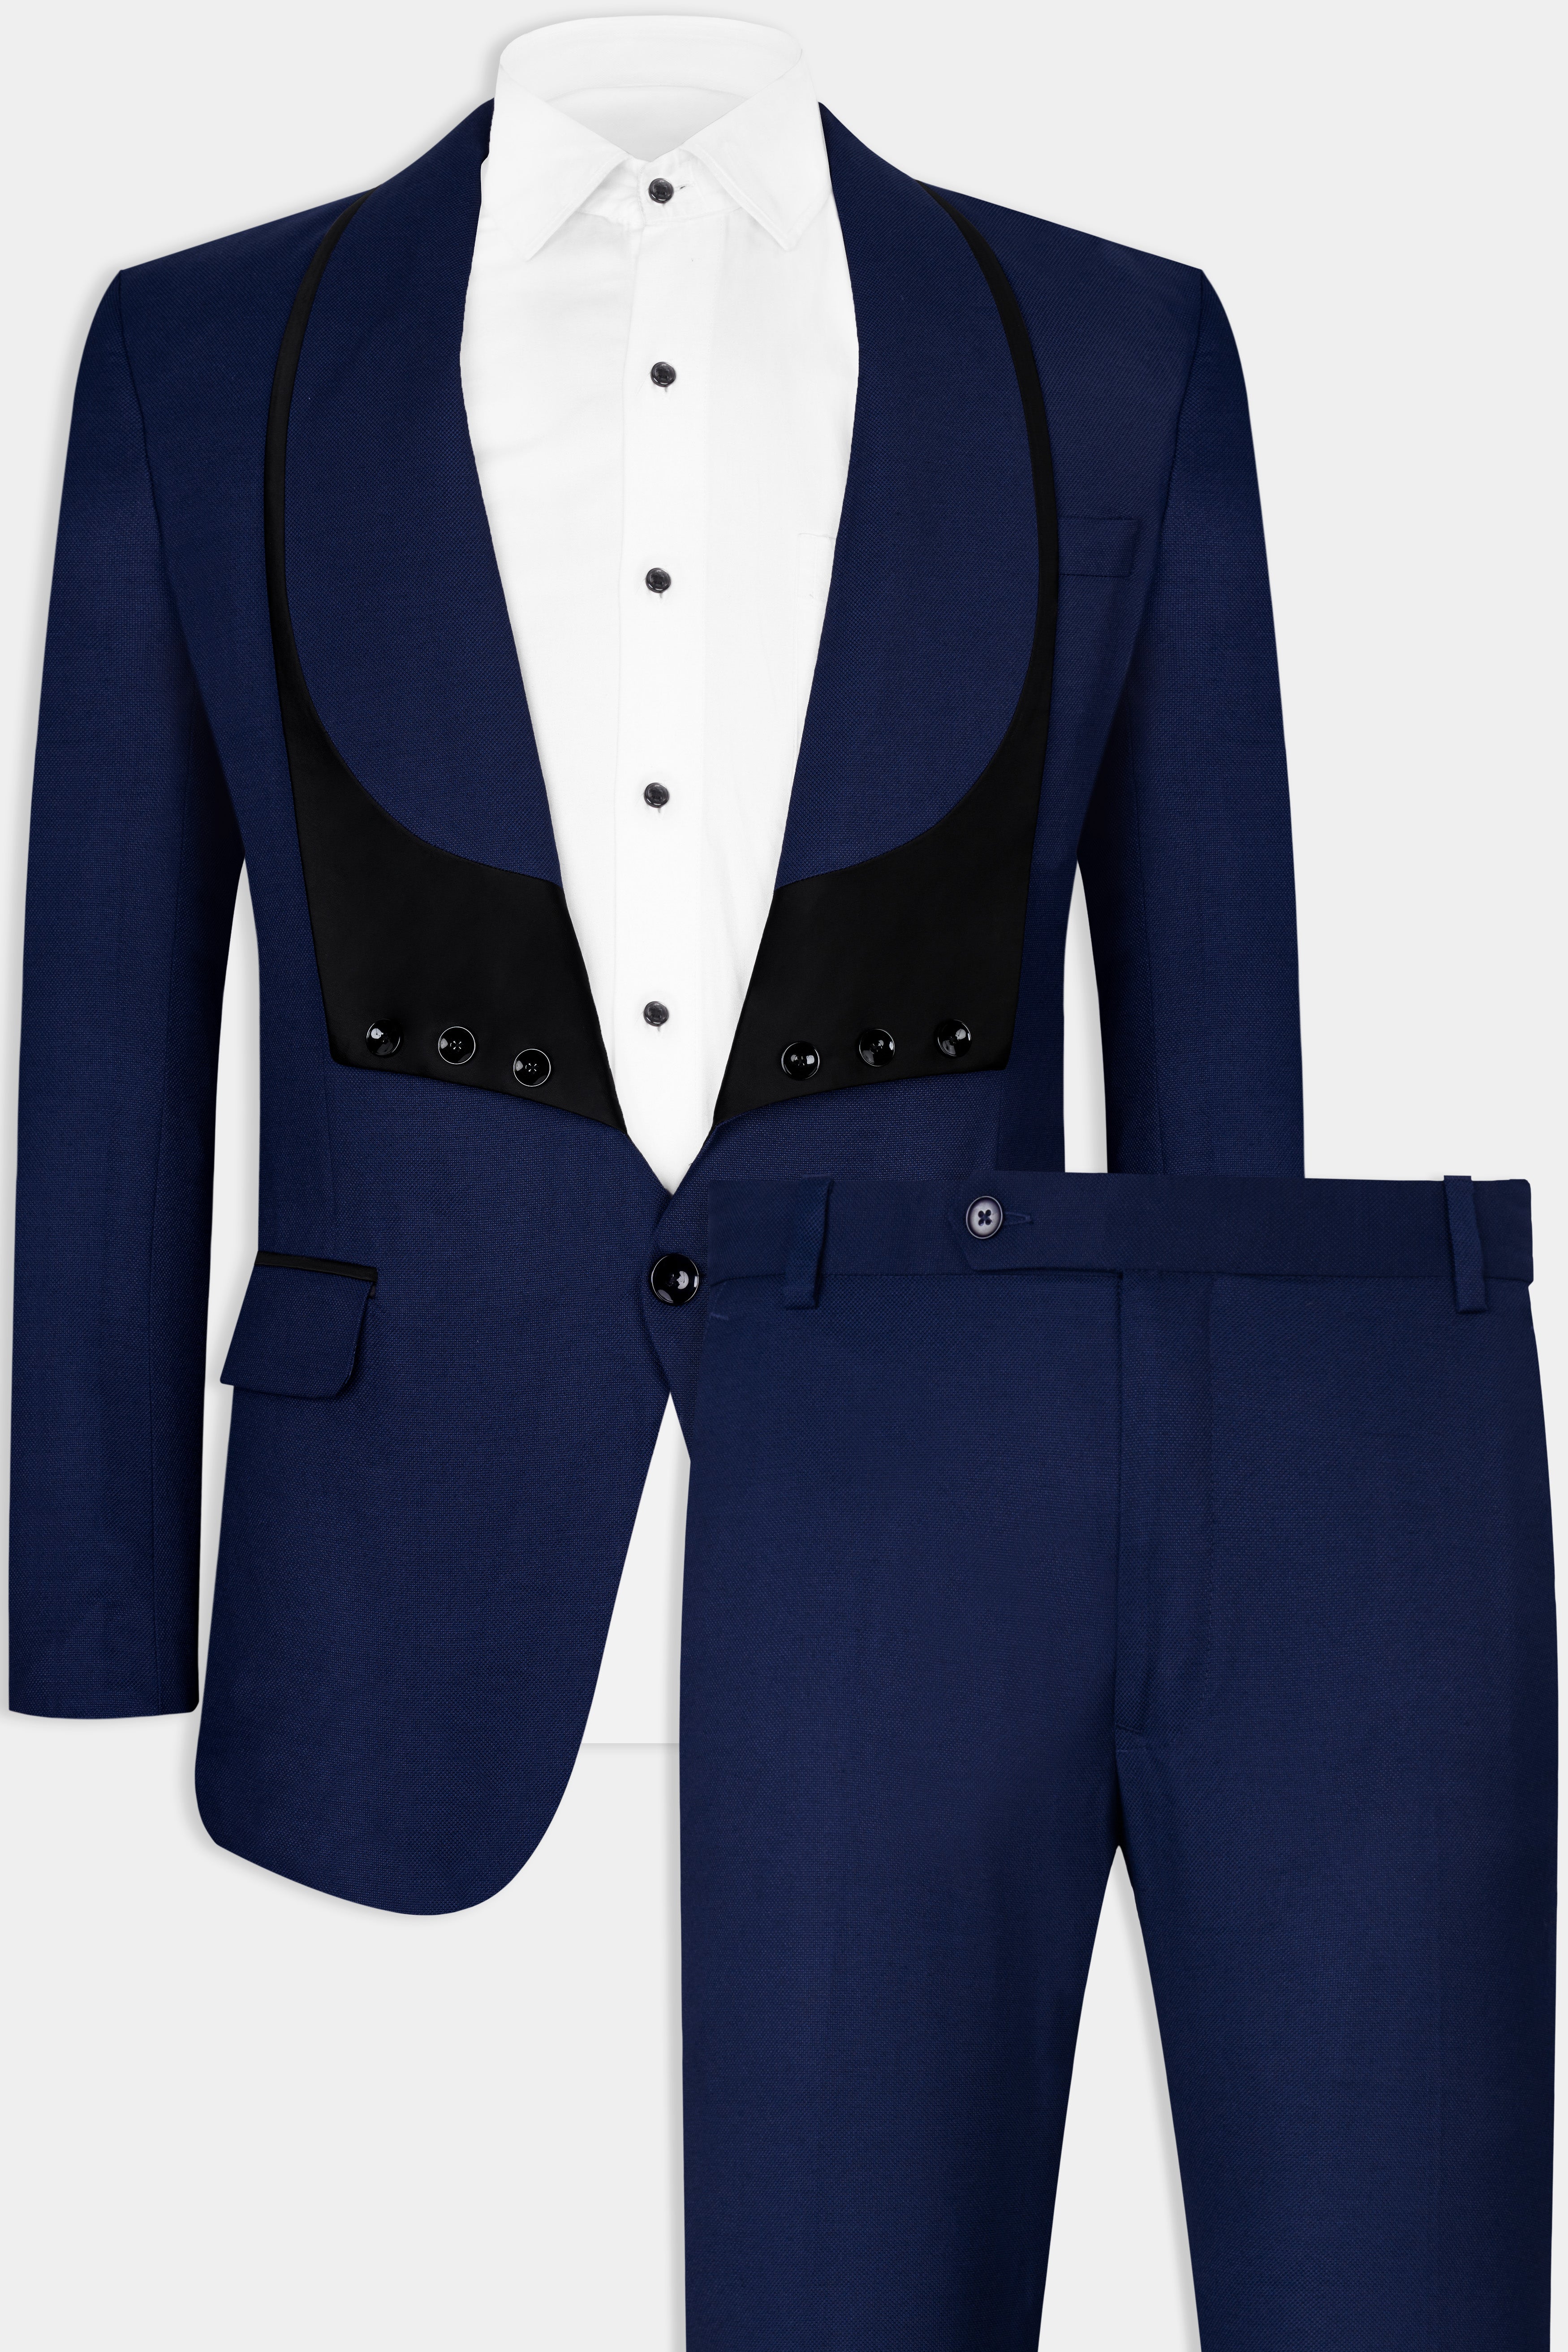 Vulcan Blue Wool Rich Designer Suit ST2852-D328-36,ST2852-D328-38,ST2852-D328-40,ST2852-D328-42,ST2852-D328-44,ST2852-D328-46,ST2852-D328-48,ST2852-D328-50,ST2852-D328-52,ST2852-D328-54,ST2852-D328-56,ST2852-D328-58,ST2852-D328-60